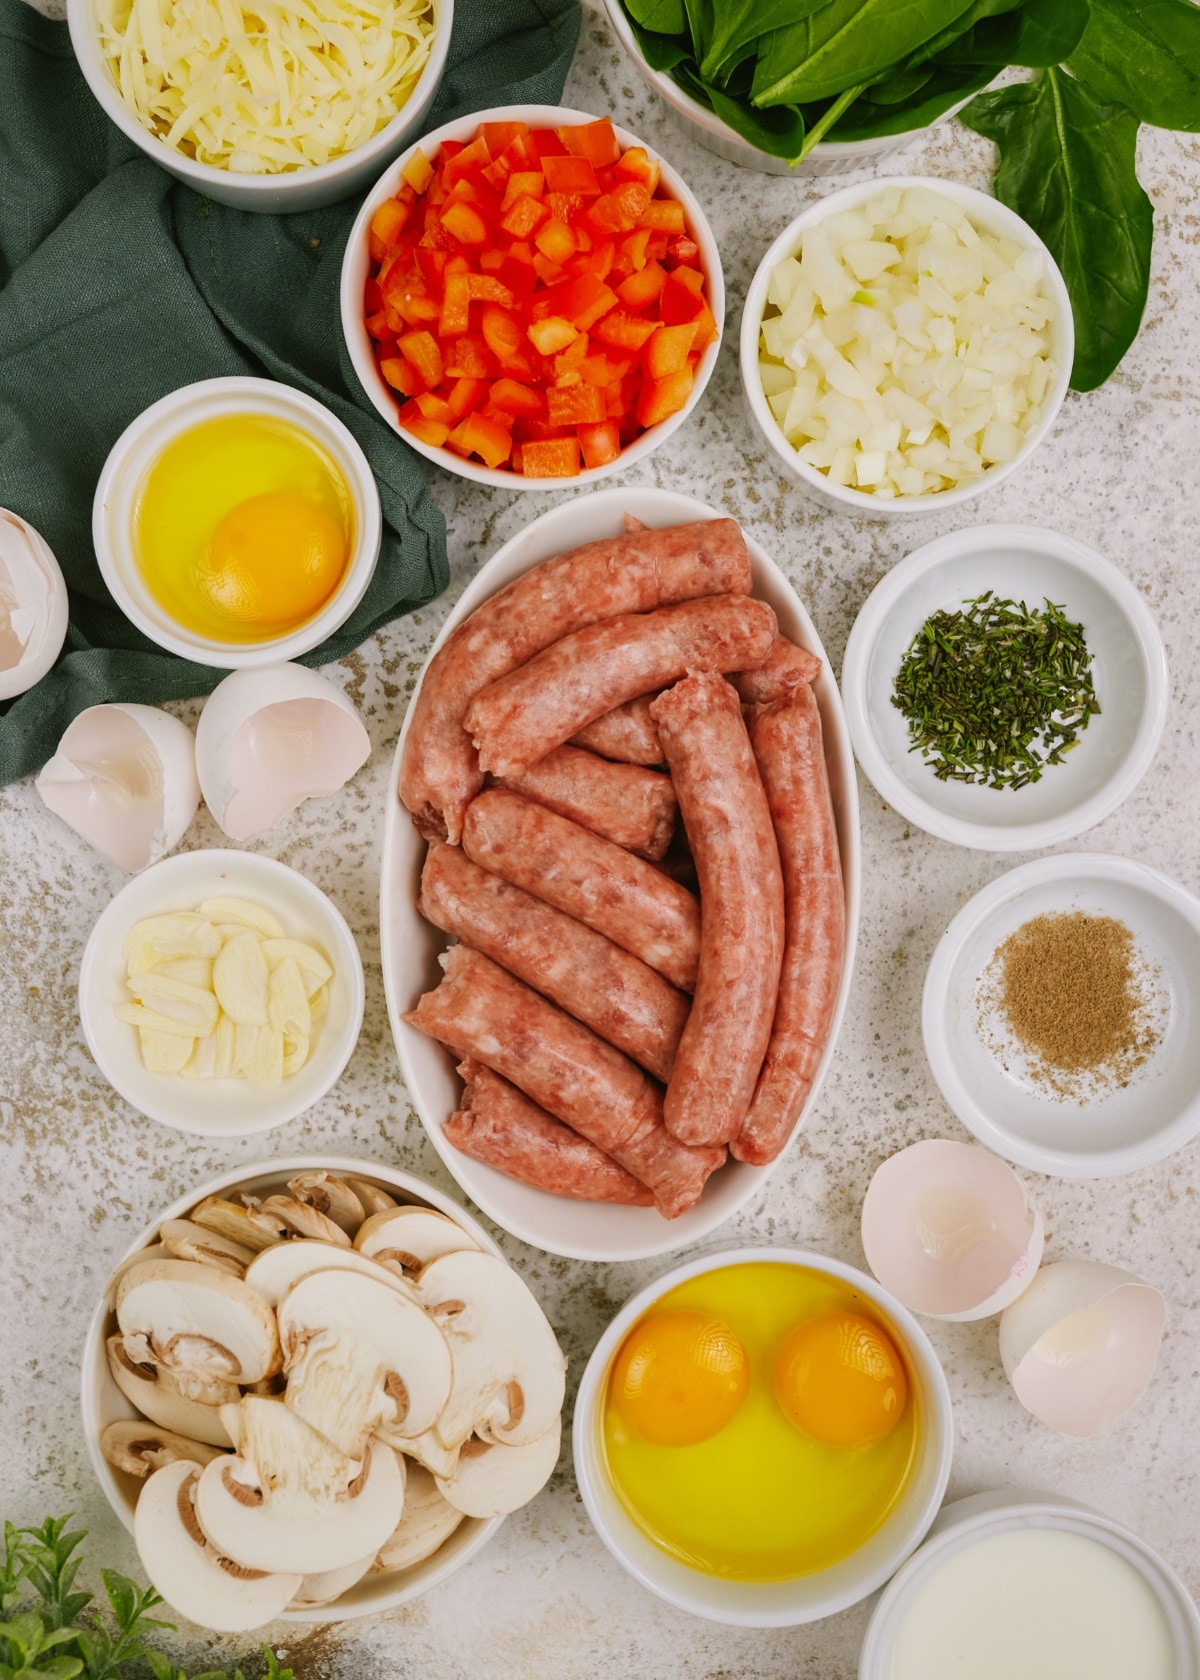 sausage breakfast casserole ingredients